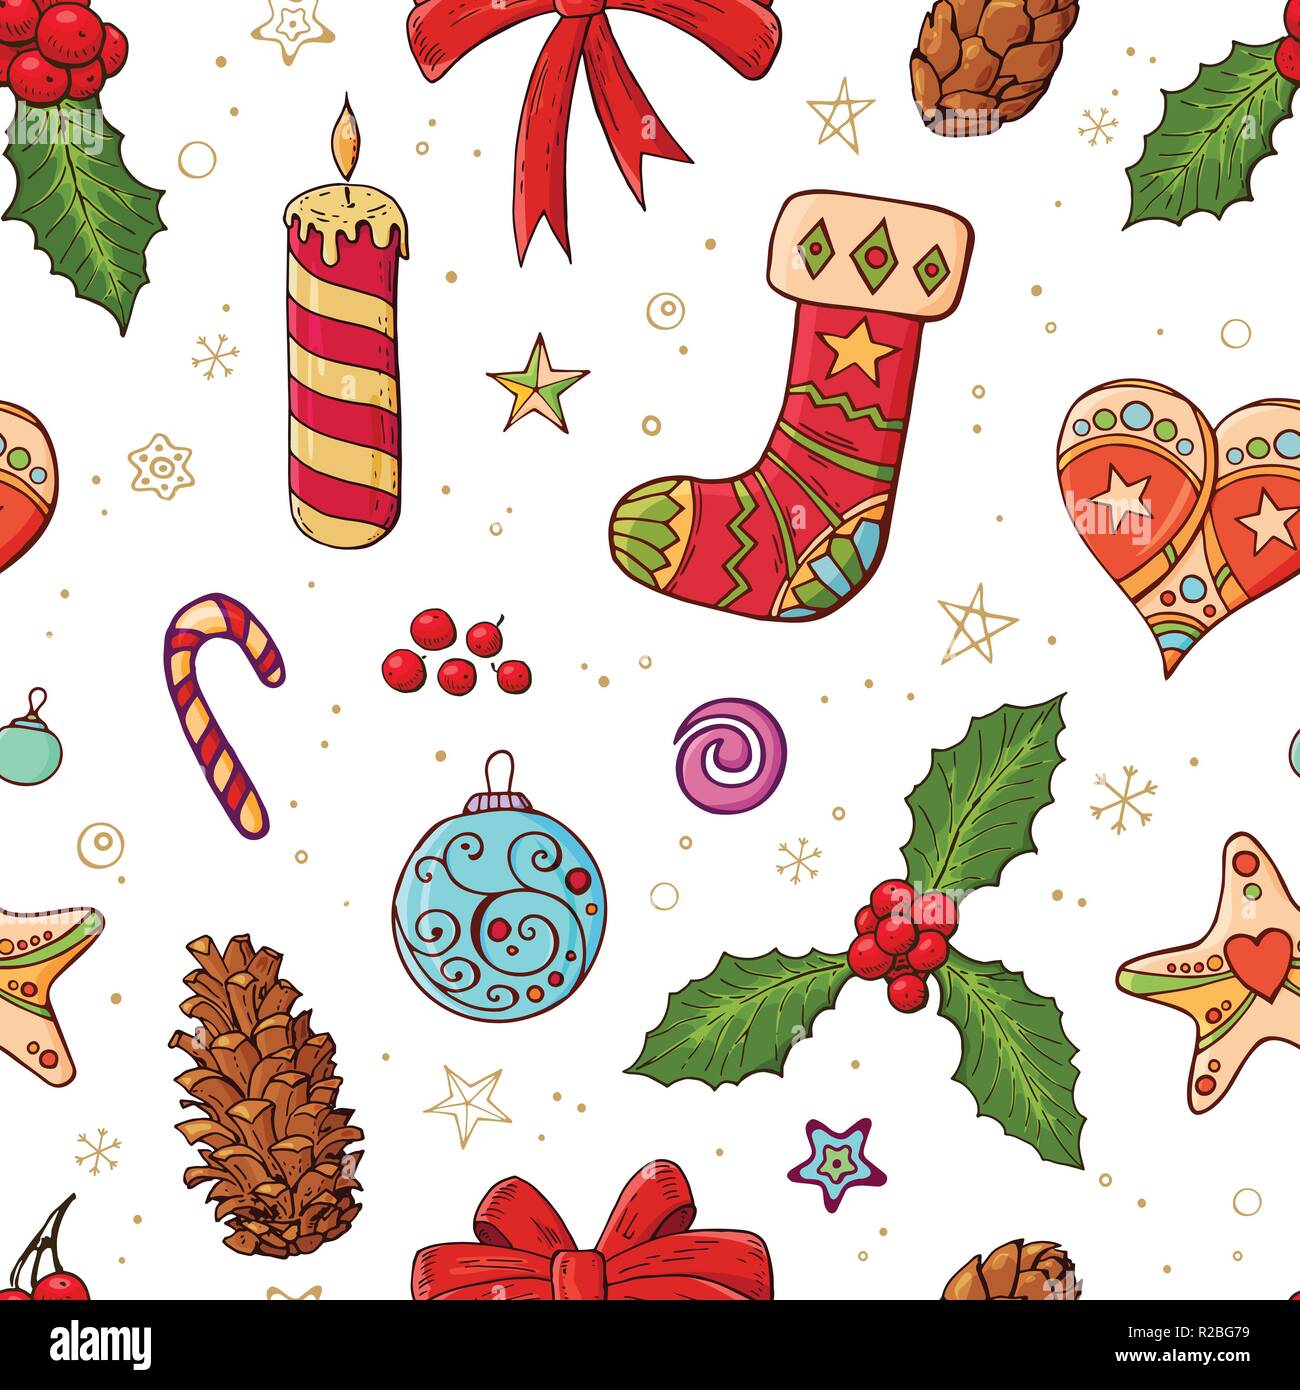 Simboli Natale.Seamless Pattern Di Festa Con I Tradizionali Simboli Del Natale E Decorazione Infinite Texture Tradizionali Per Natale Design Tessuti Sfondi Immagine E Vettoriale Alamy